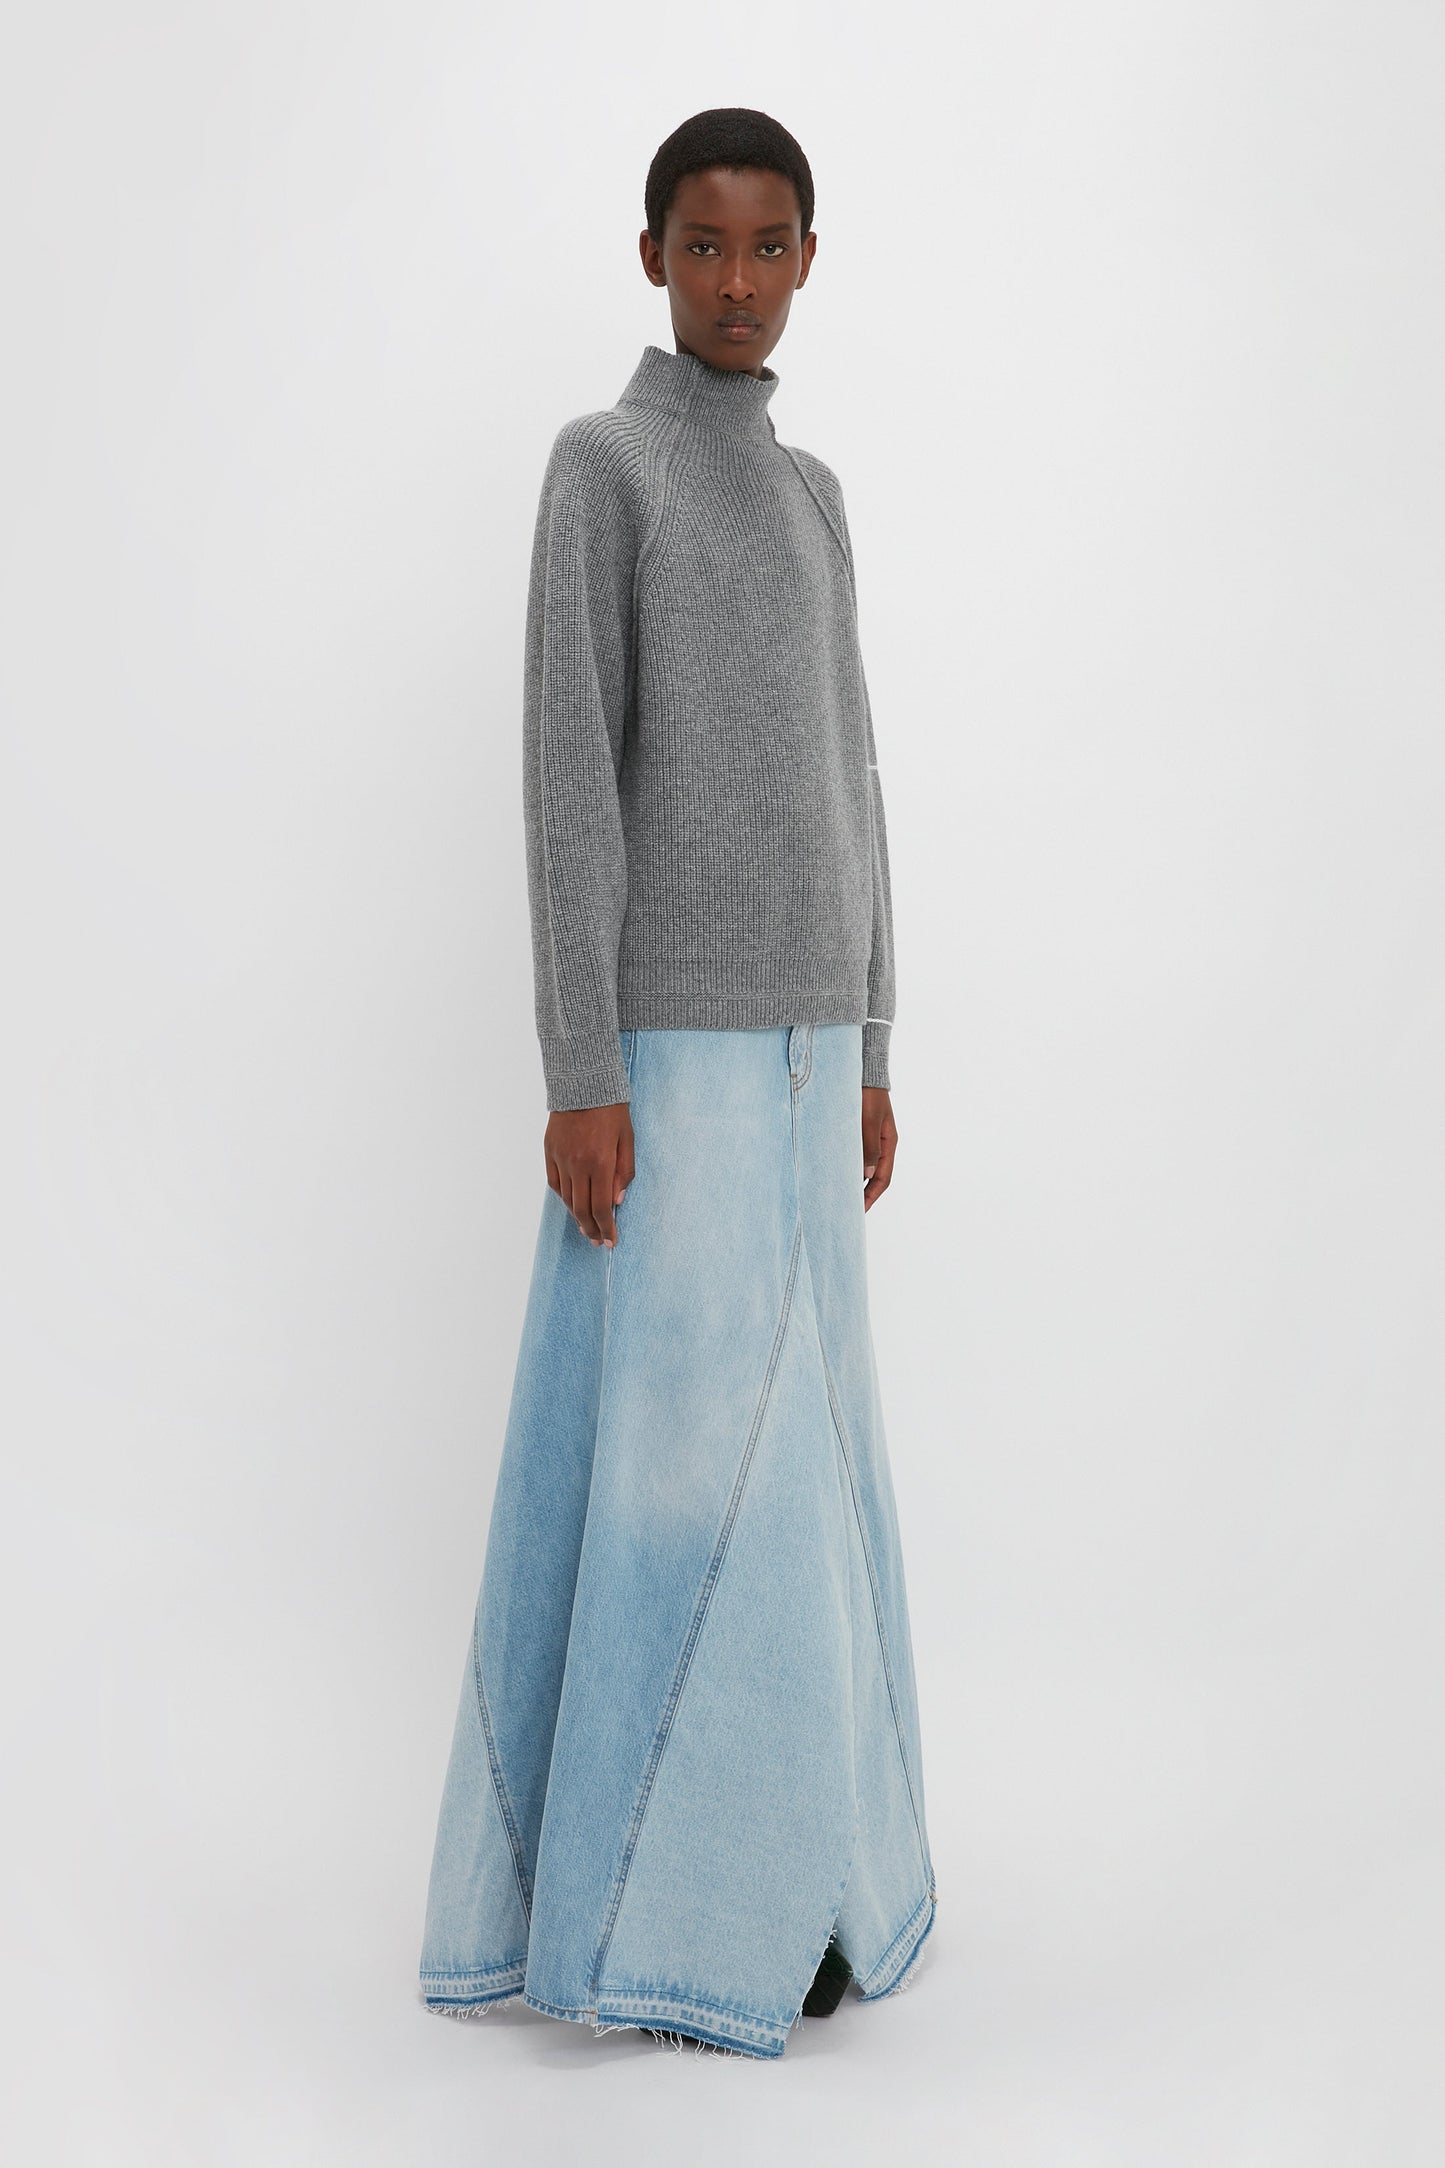 Maxi Godet Denim Skirt In Light Blue Wash